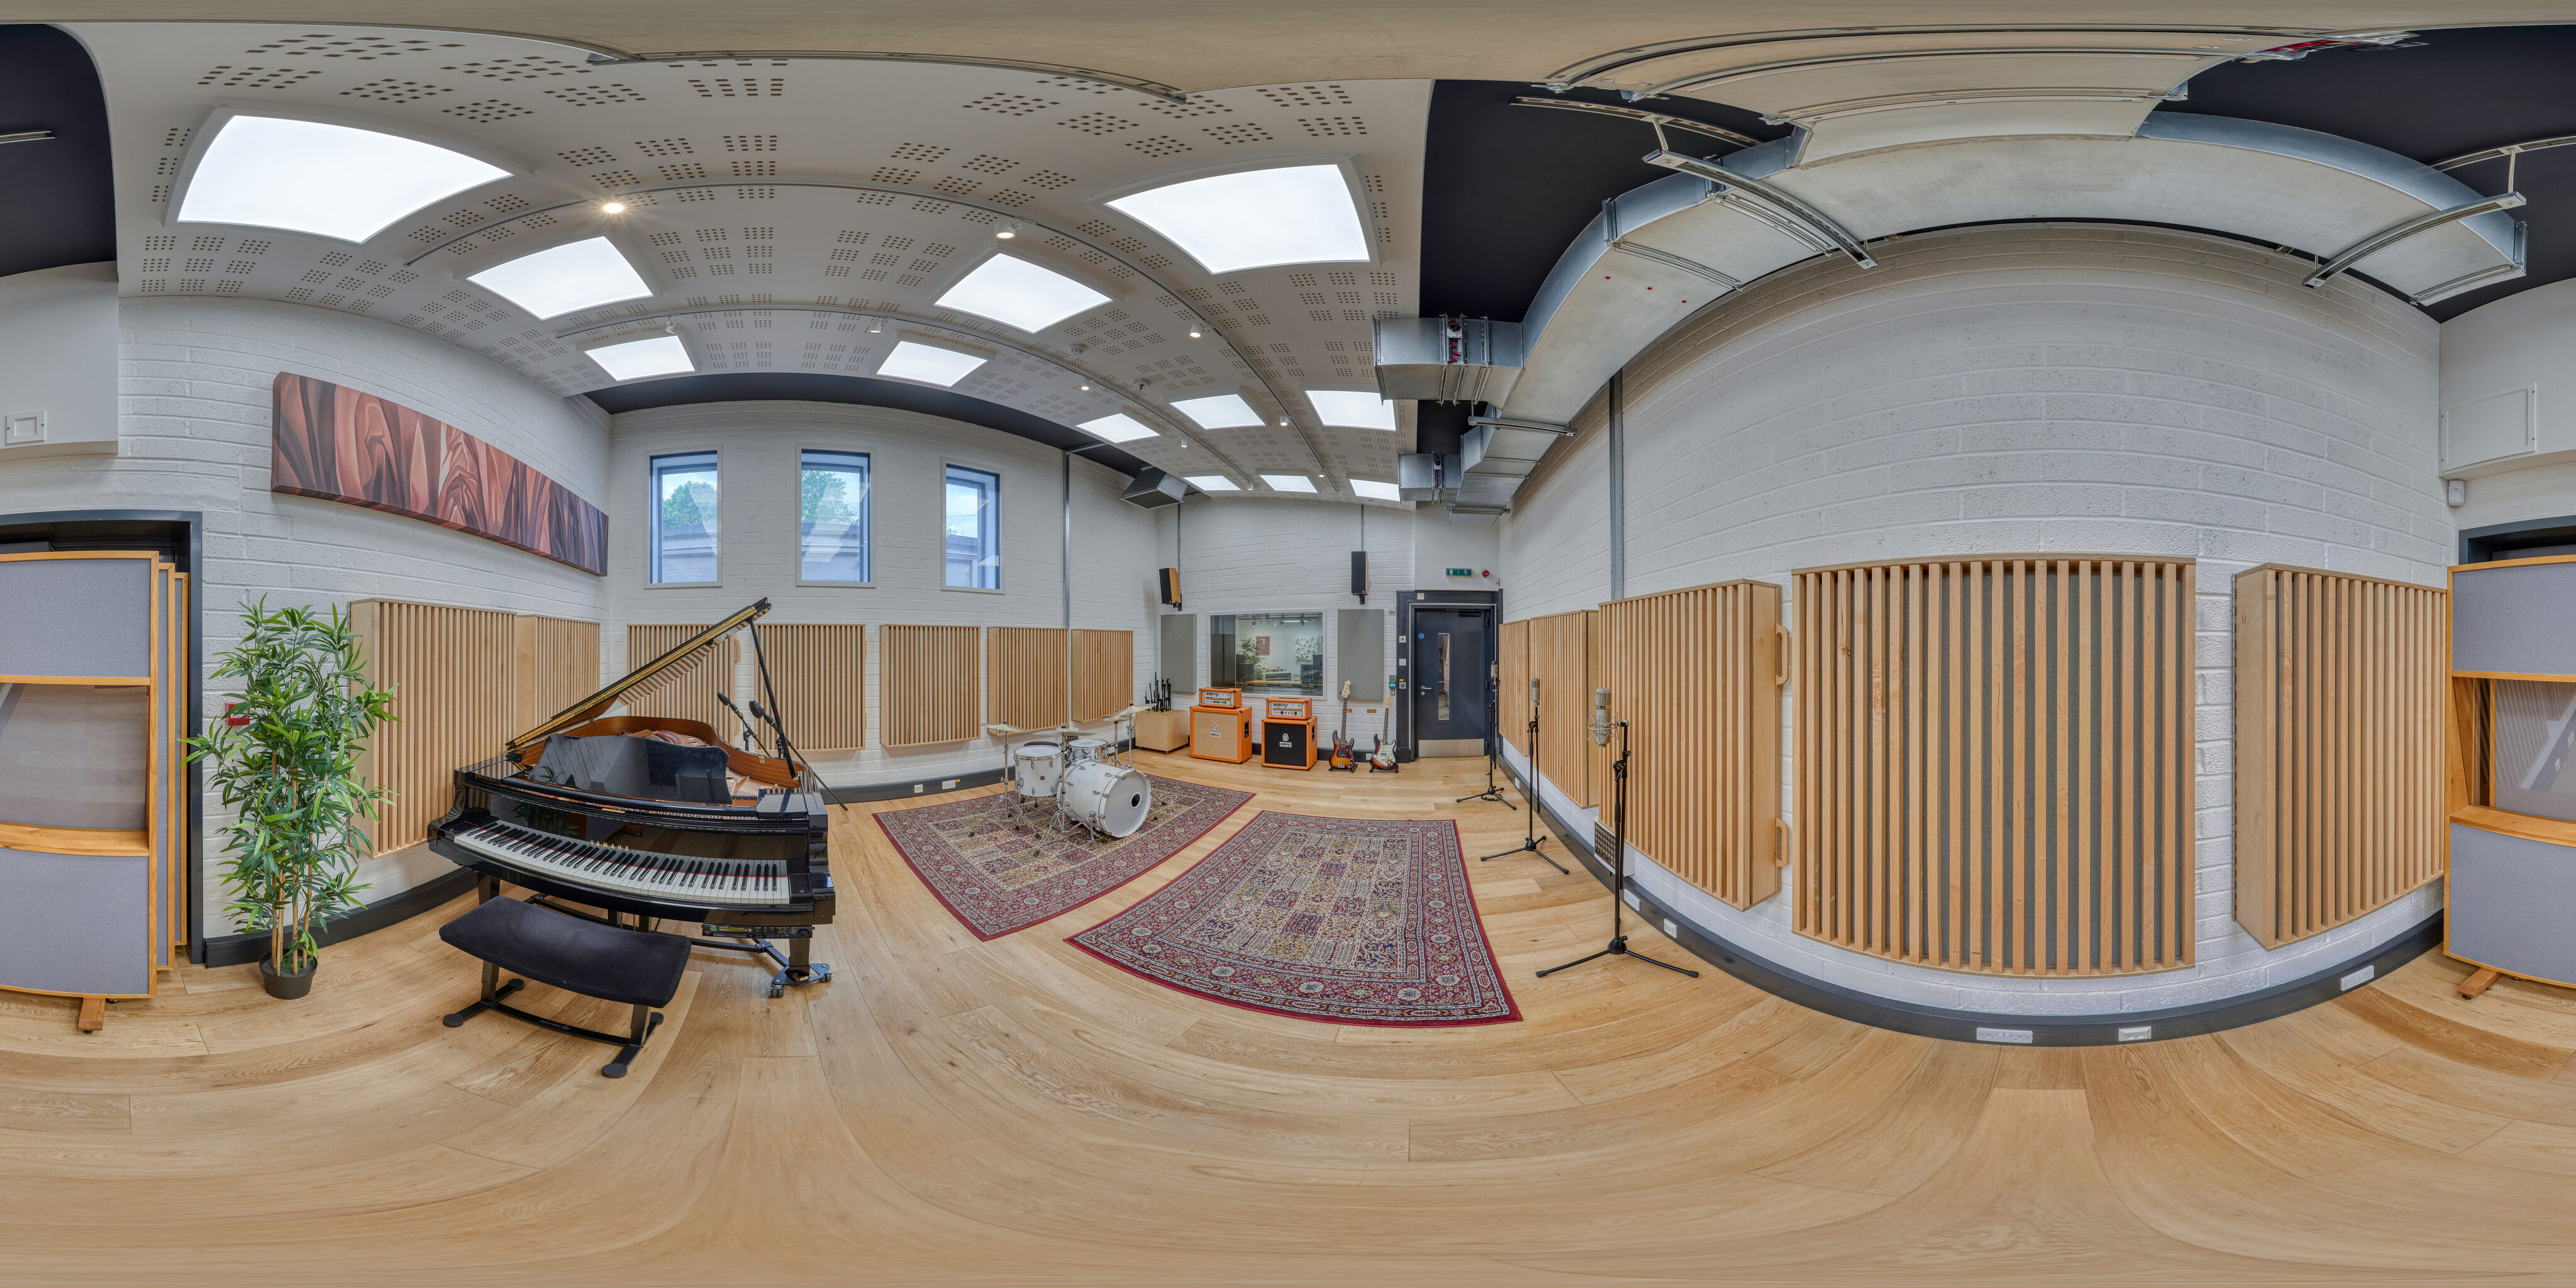 360 of Recording Studio